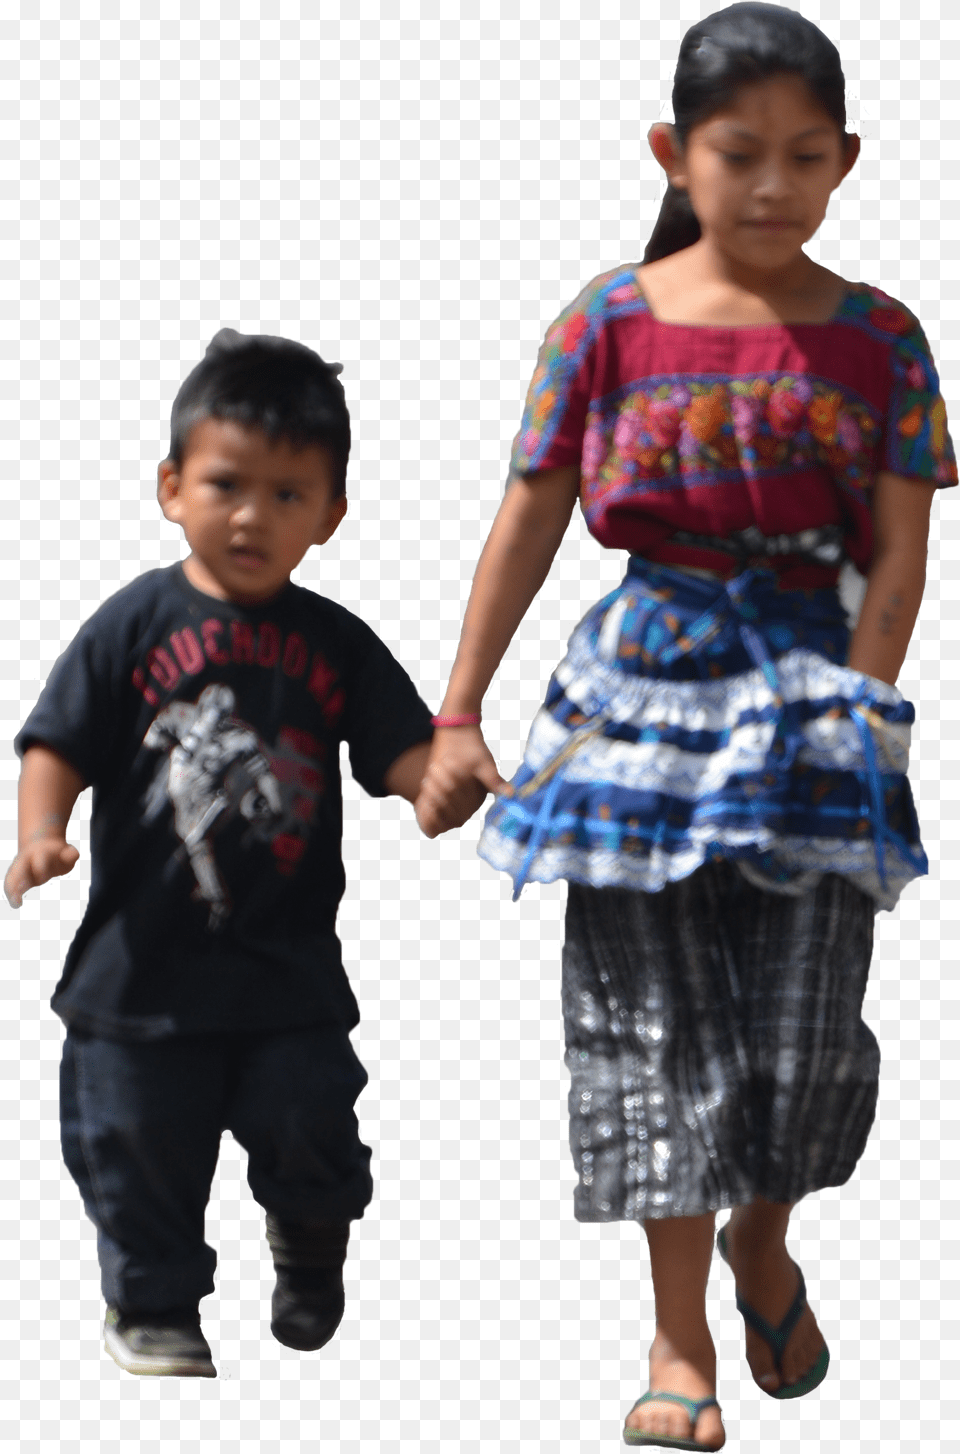 Transparent Children Walking Walking Kids, Clothing, Skirt, Girl, Person Png Image